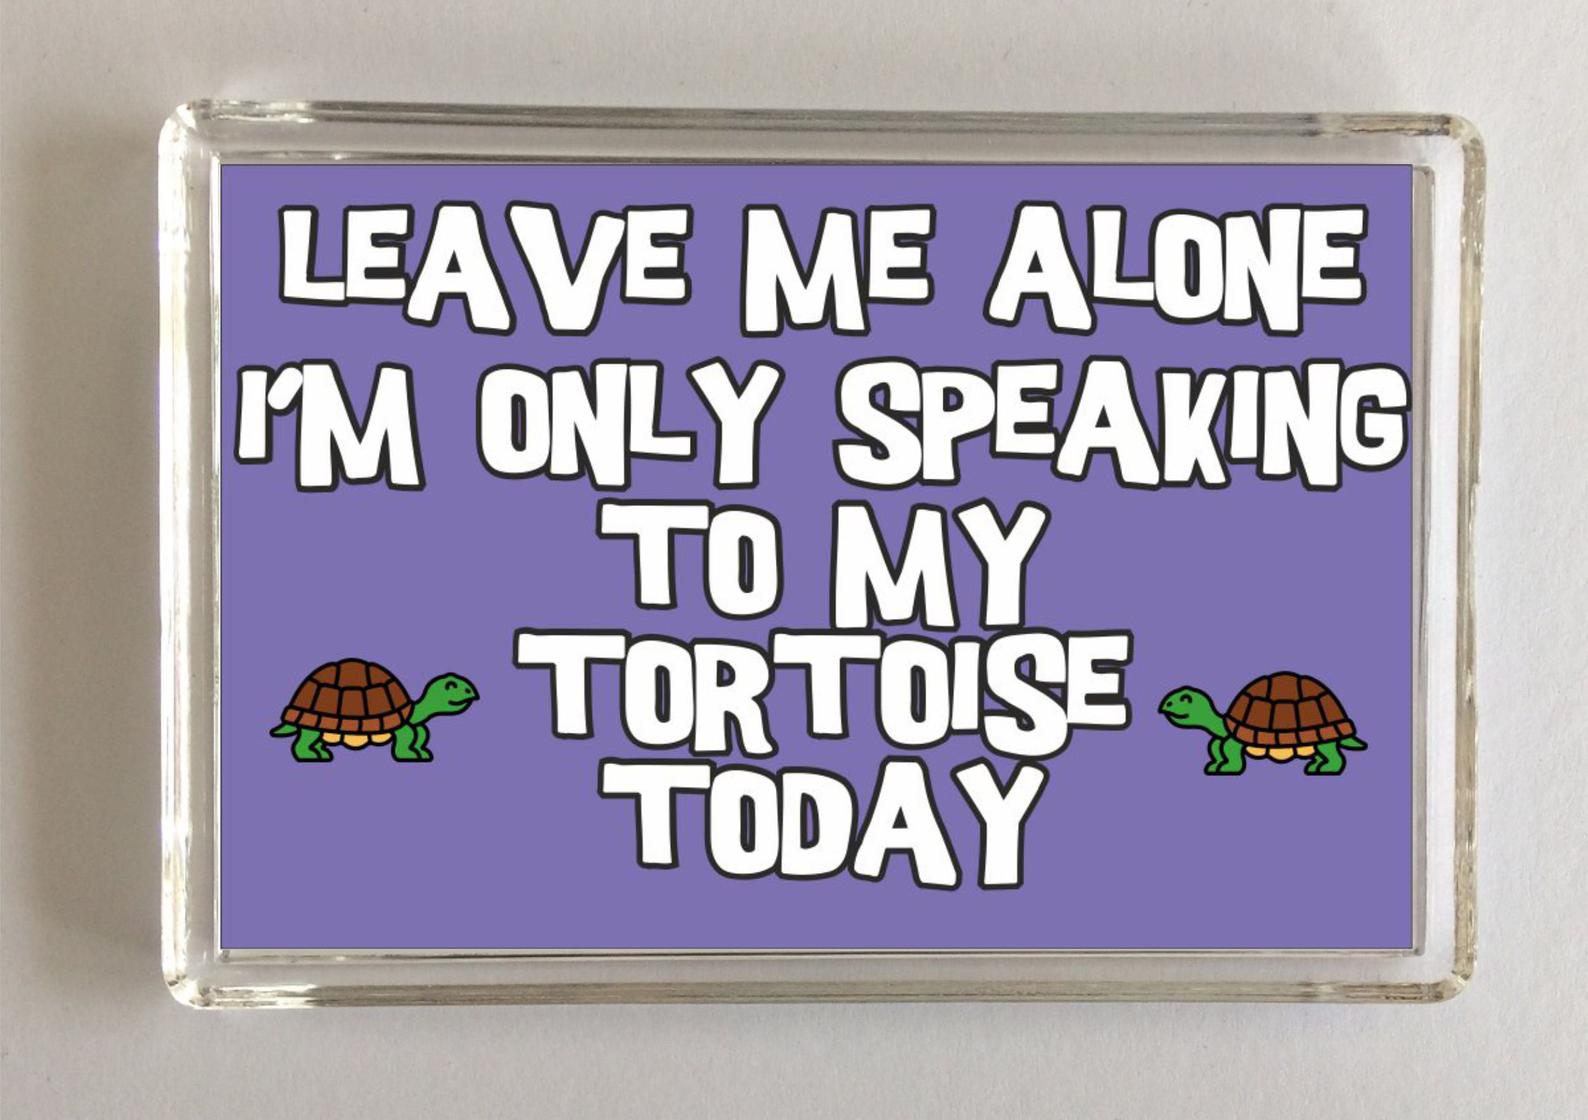 Tortoise slogan novelty magnet - 